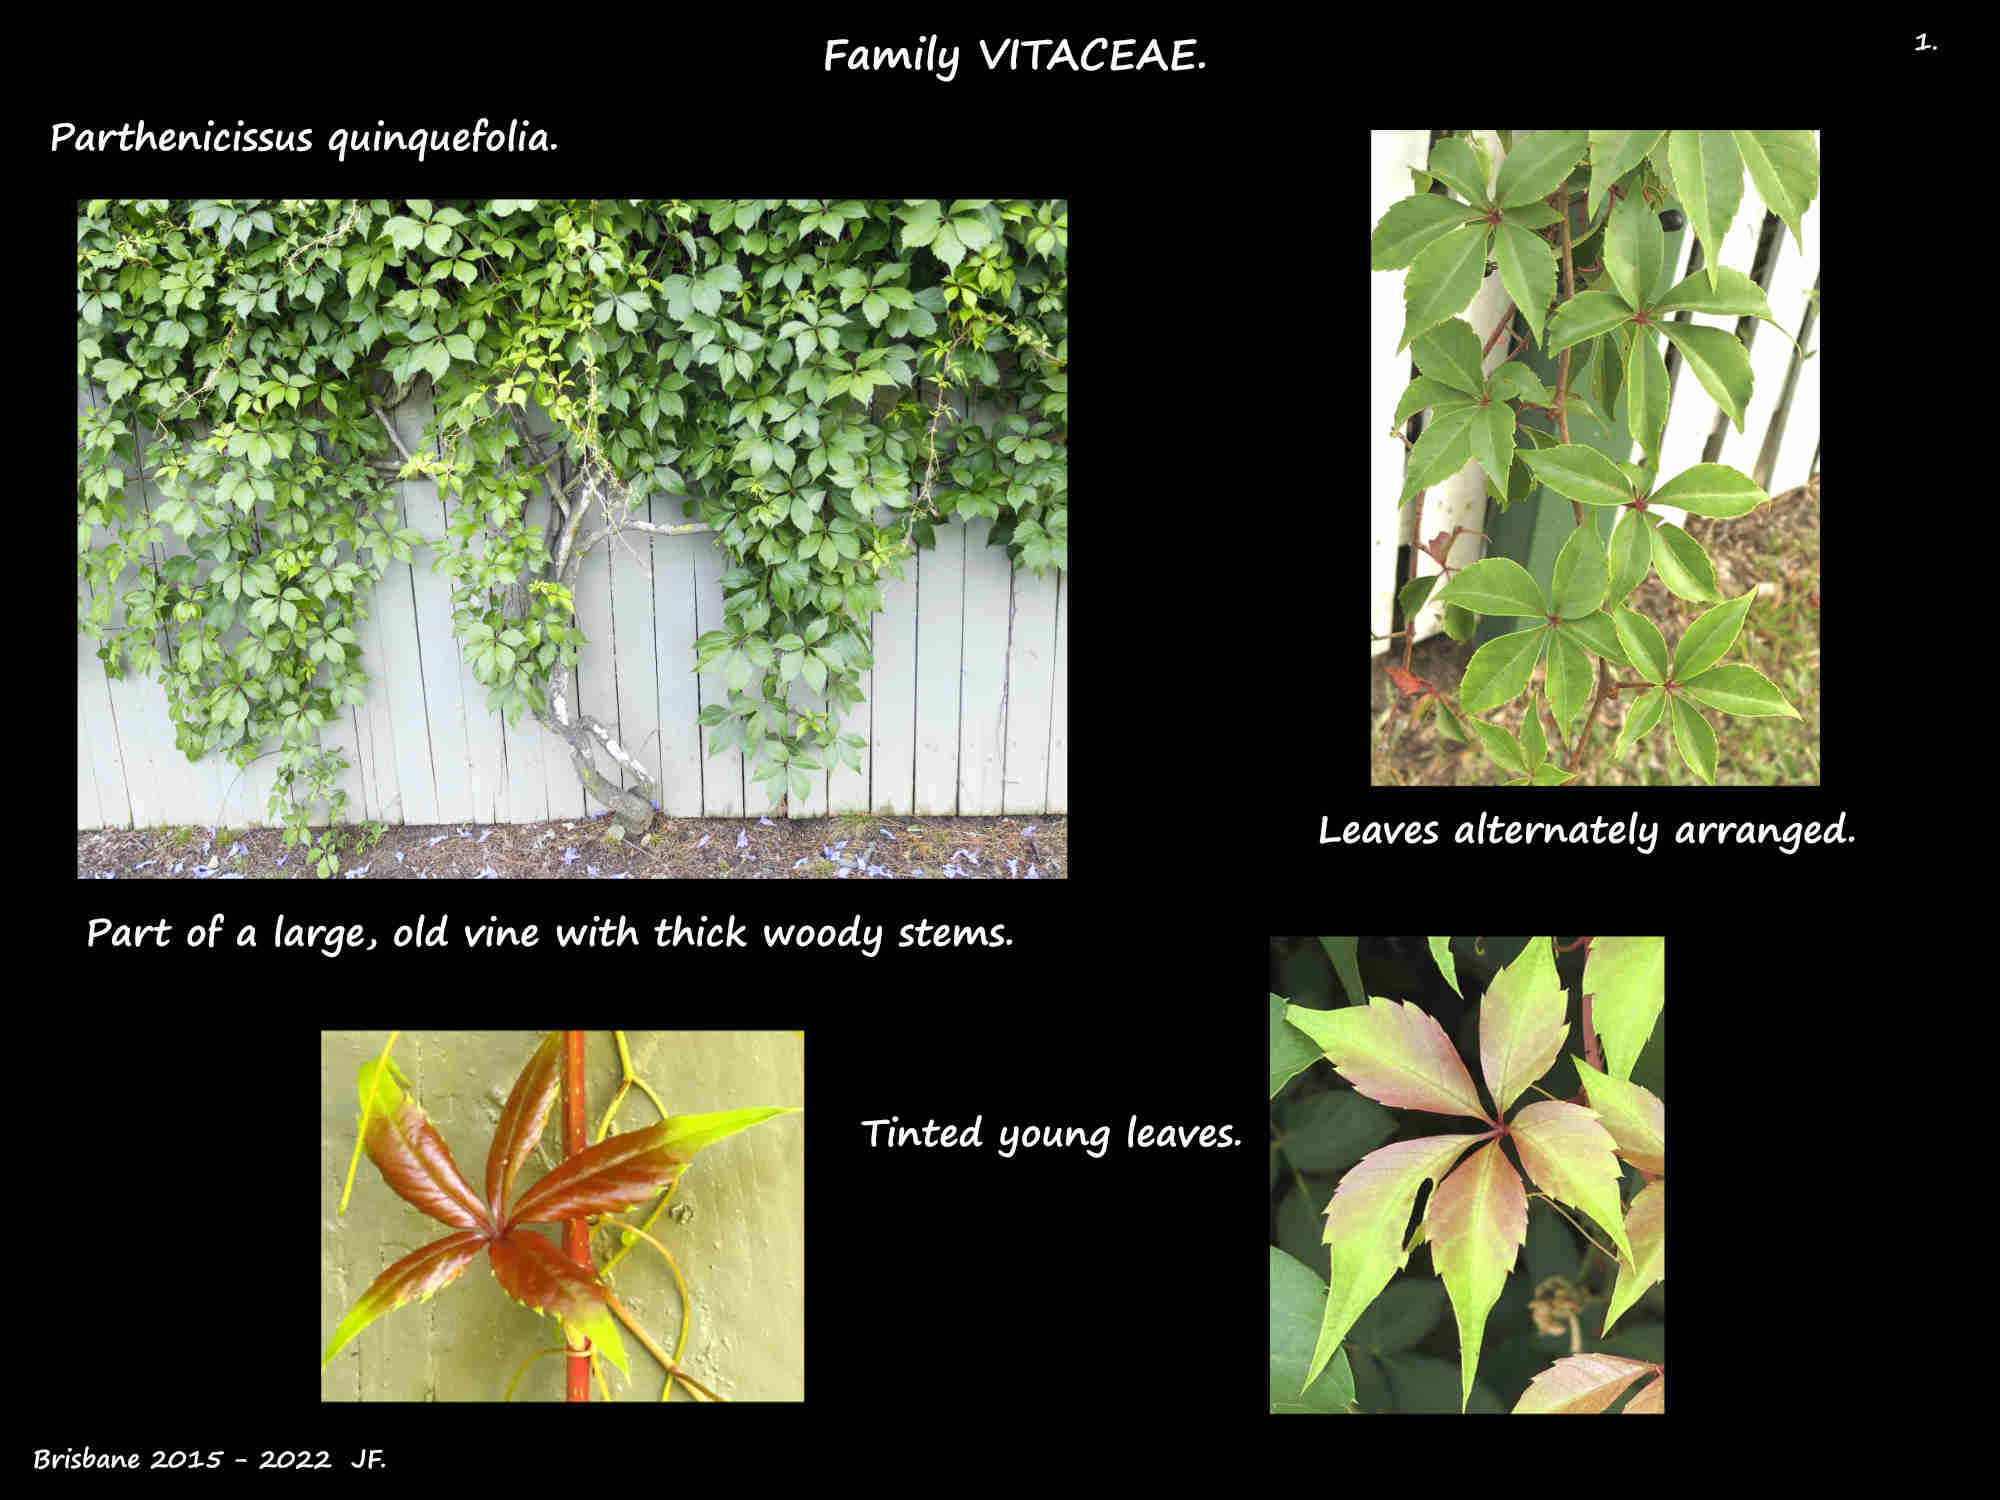 1 Parthenocissus quinquefolia vine & tinted leaves